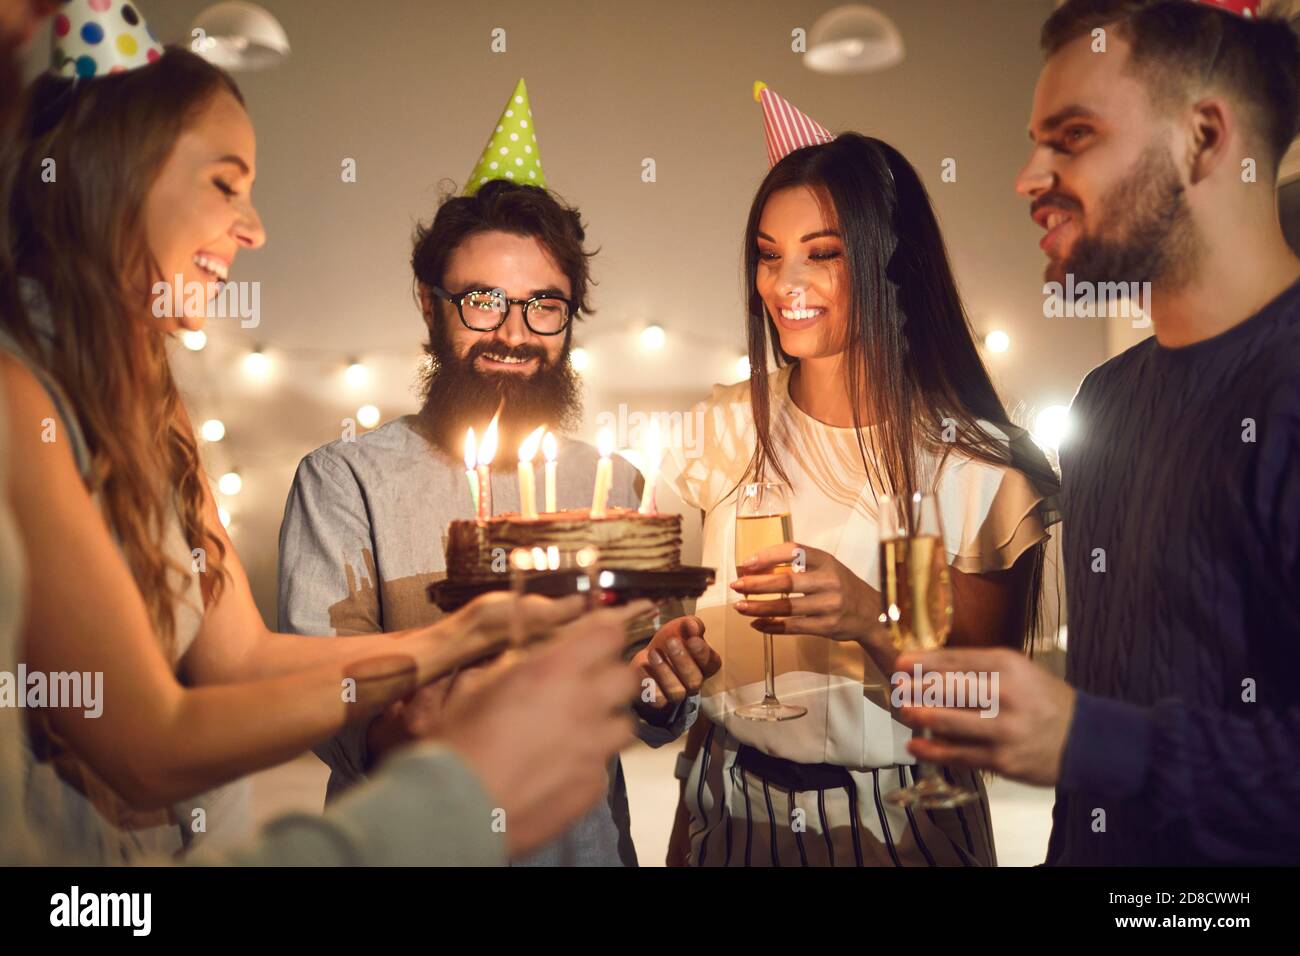 Des amis souriants célèbrent leur anniversaire et font la fête avec un gâteau de Noël et champagne Banque D'Images